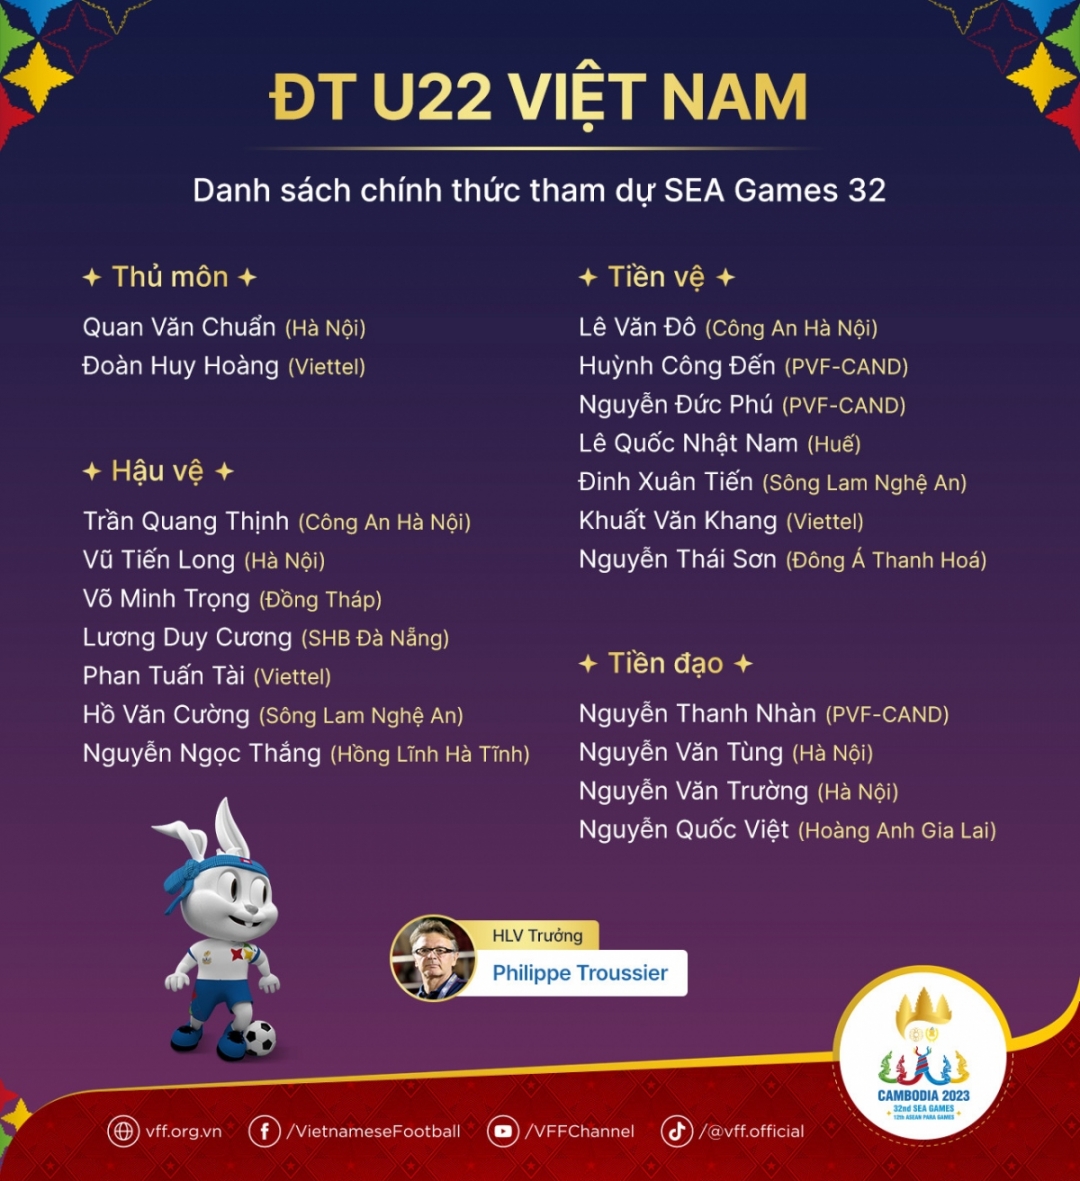 Danh sách chính thức tham dự SEA Games 32 của U22 Việt Nam.